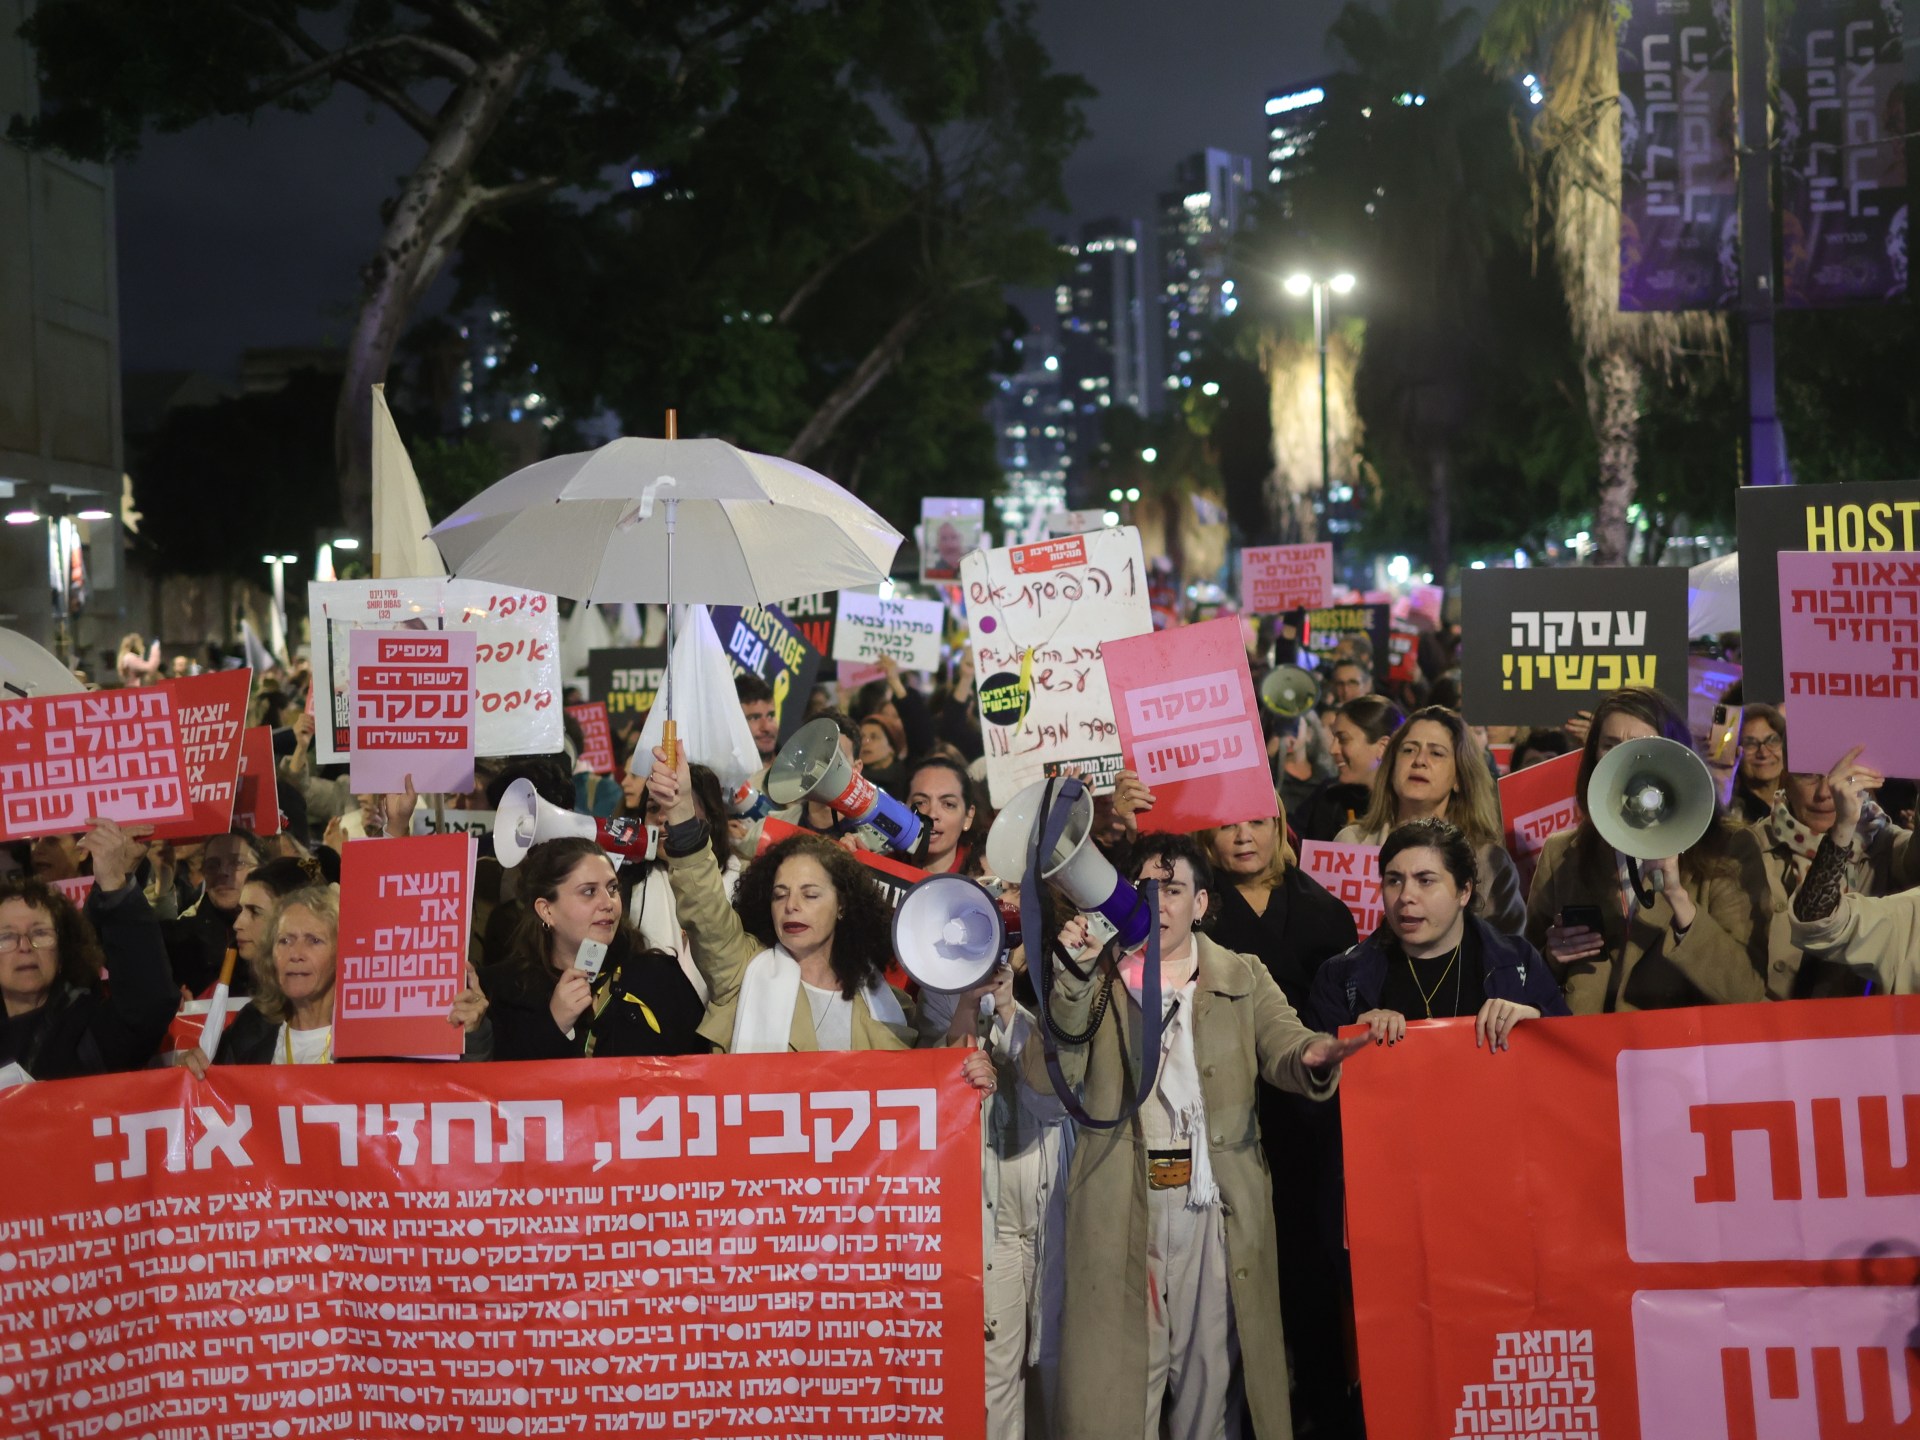 تزايد حالات العنف ضد النساء في إسرائيل منذ طوفان الأقصى | أخبار – البوكس نيوز